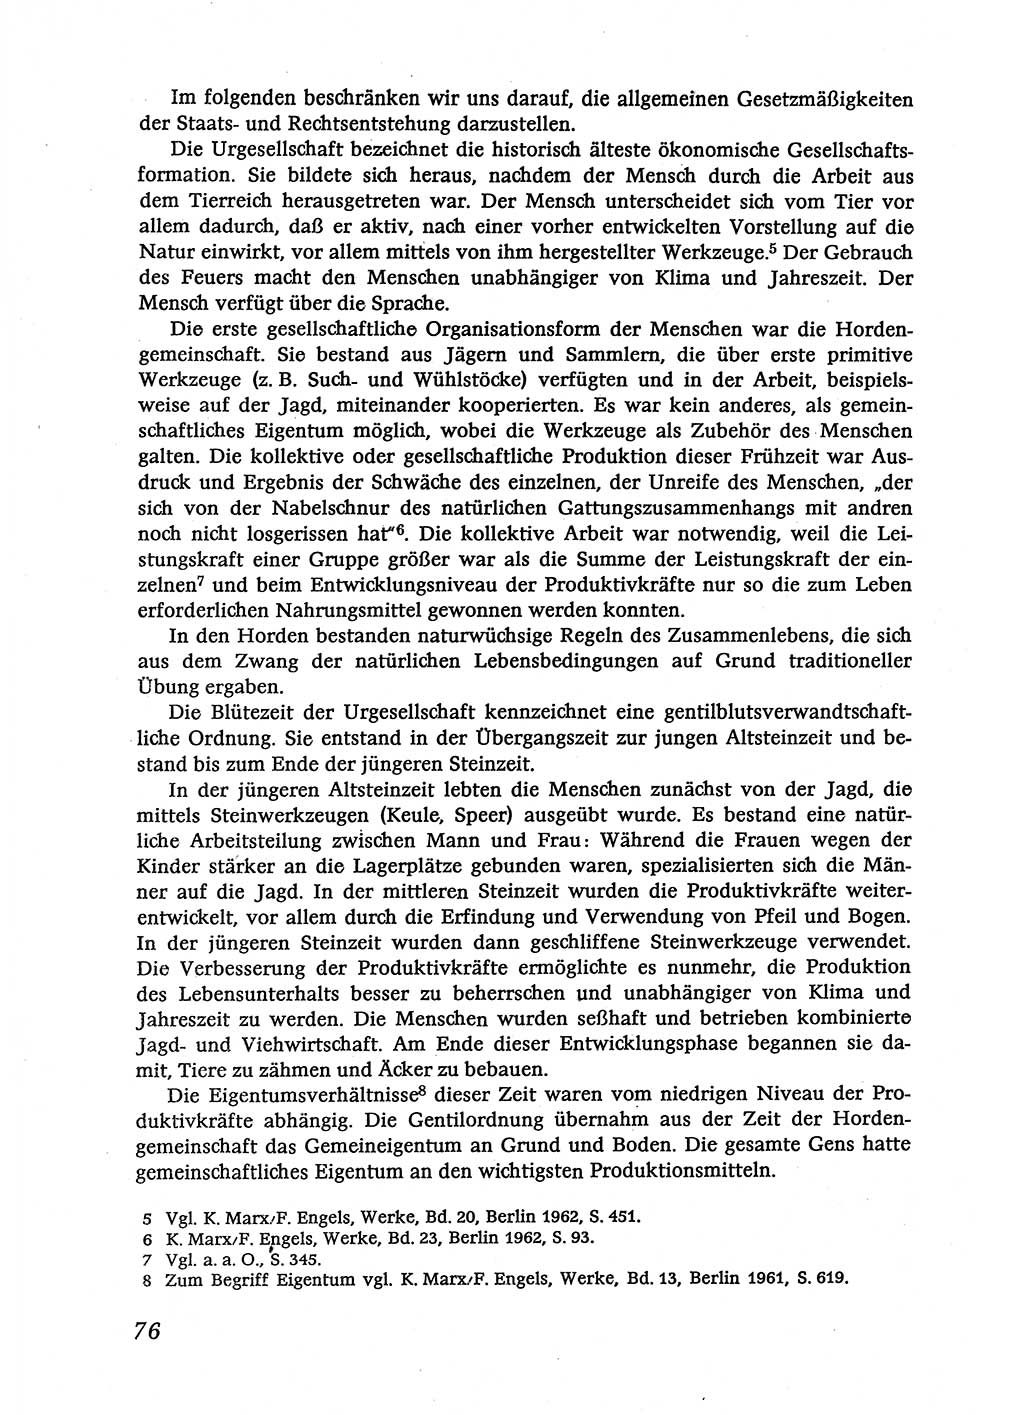 Marxistisch-leninistische (ML) Staats- und Rechtstheorie [Deutsche Demokratische Republik (DDR)], Lehrbuch 1980, Seite 76 (ML St.-R.-Th. DDR Lb. 1980, S. 76)